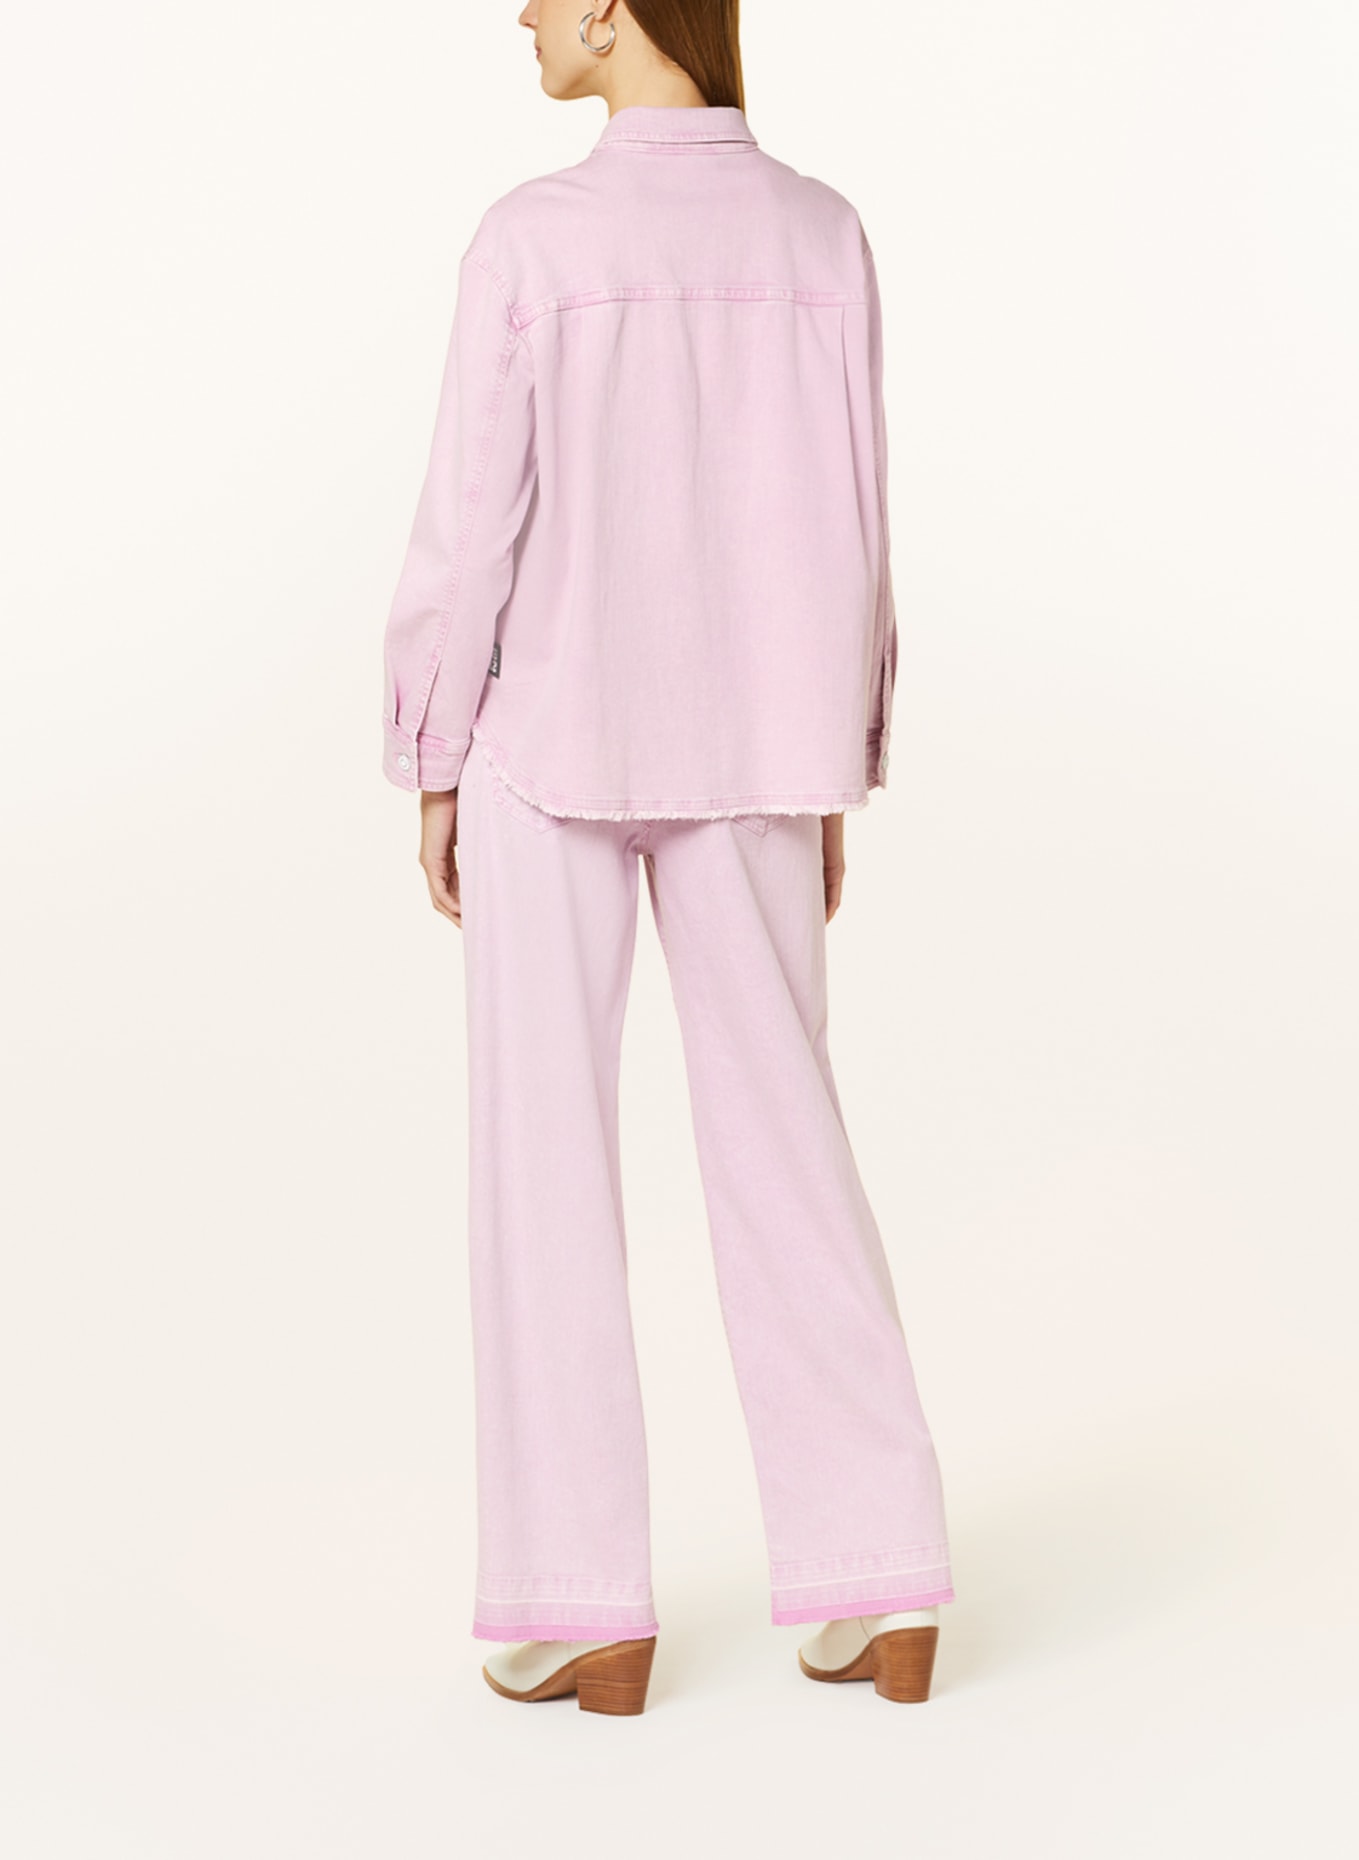 MARC CAIN Denim blouse, Color: 708 bright pink lavender (Image 3)